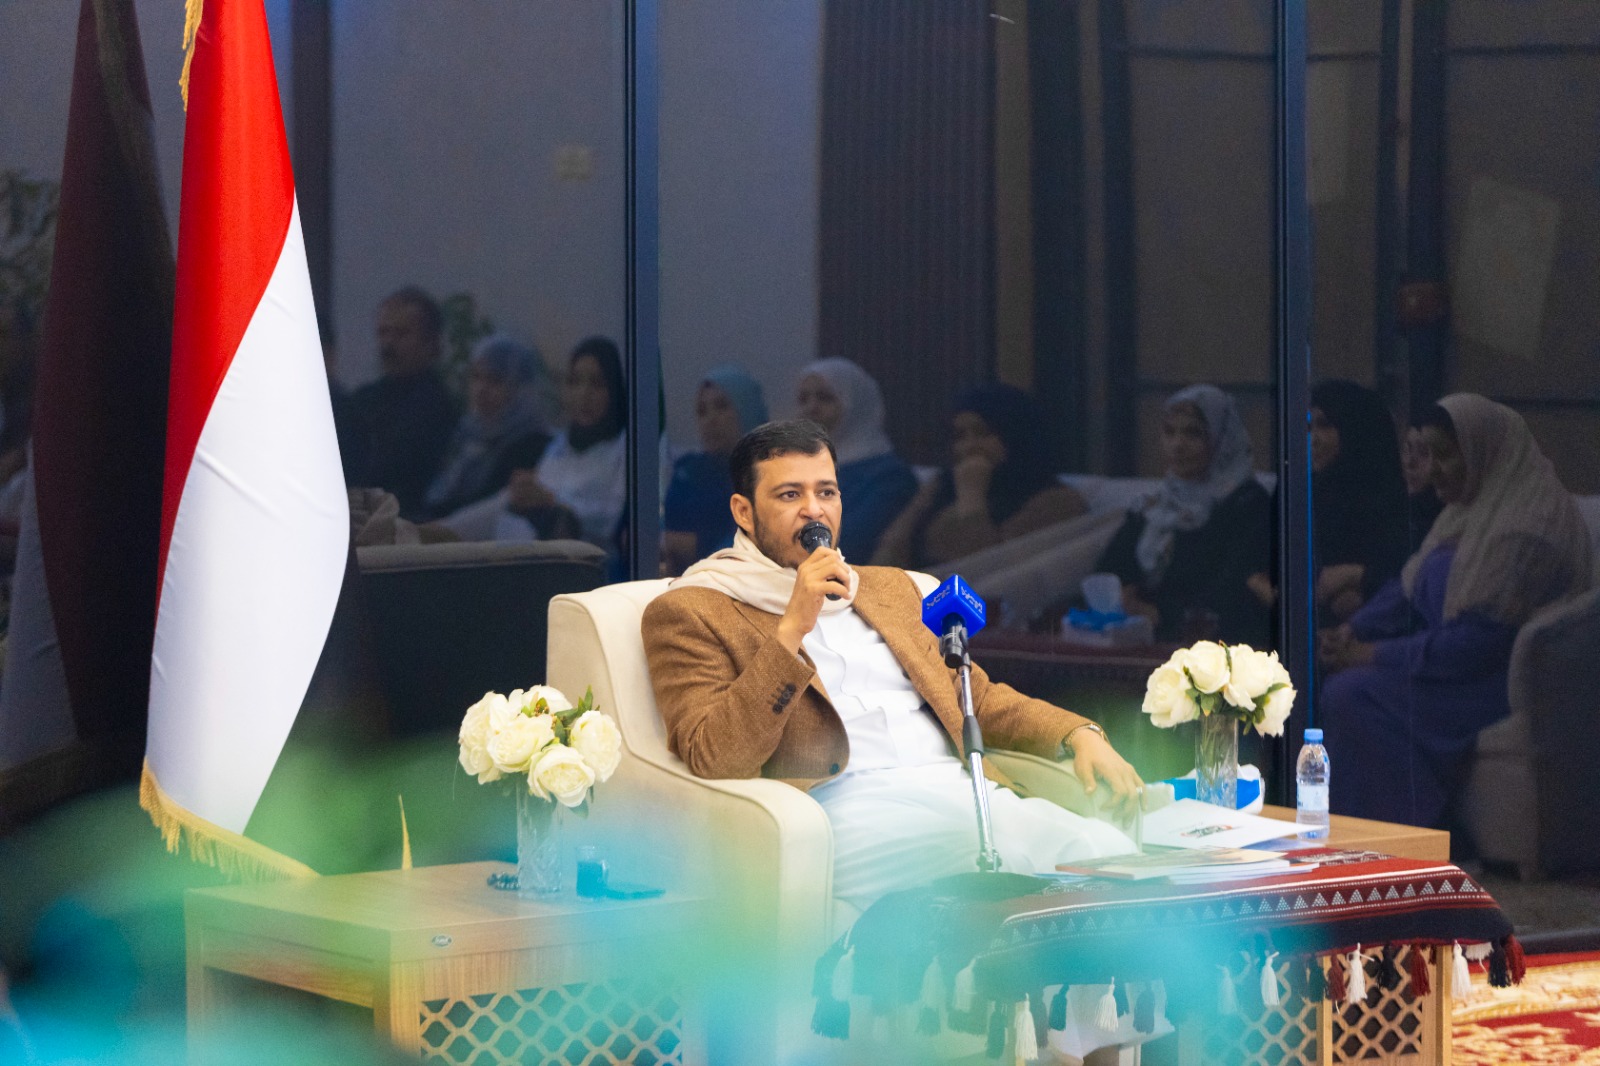 عضو مجلس القيادة الدكتور عبدالله العليمي يشيد بالدور الوطني والتنويري للصحفيين والإعلاميين